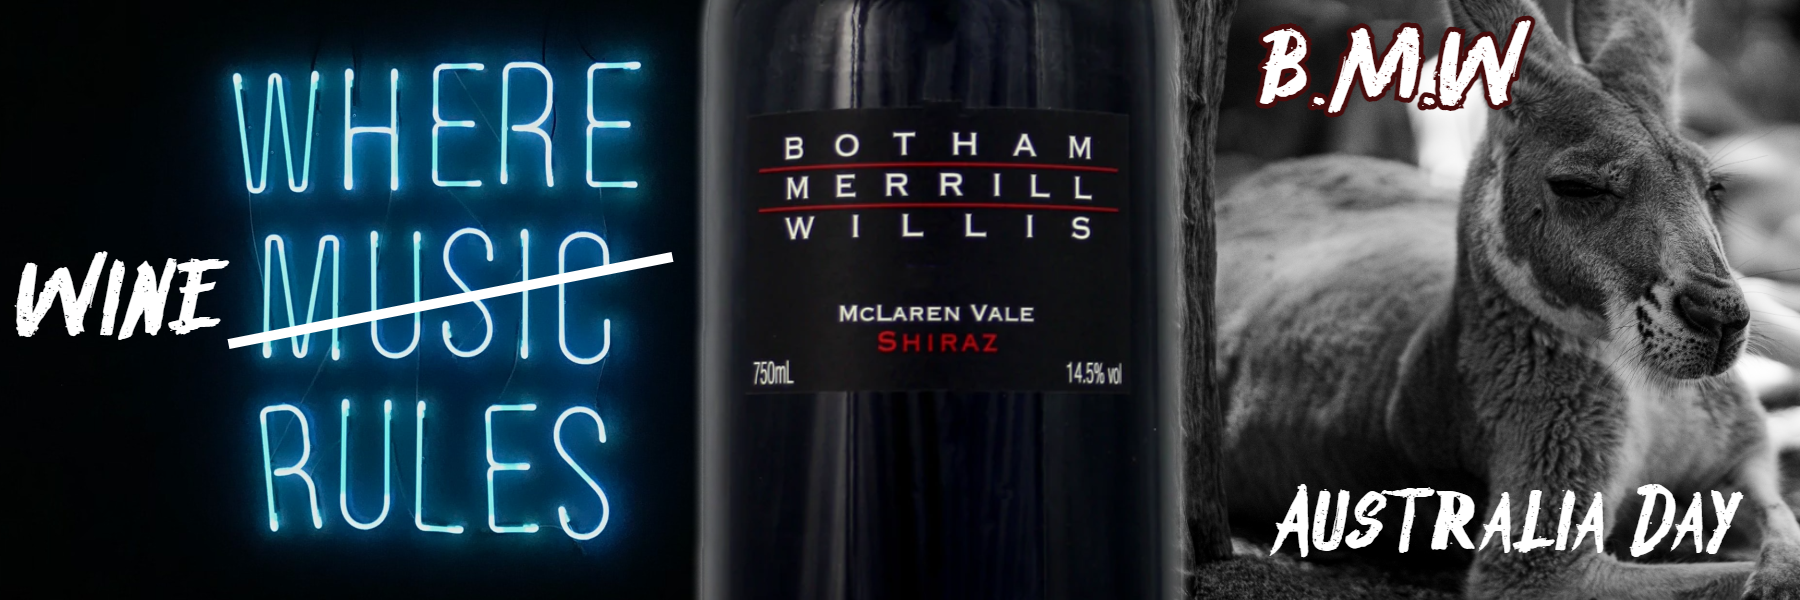 Botham-Merrill-Willis Shiraz, McLaren Vale, Australia, 2014  £19.75/bottle